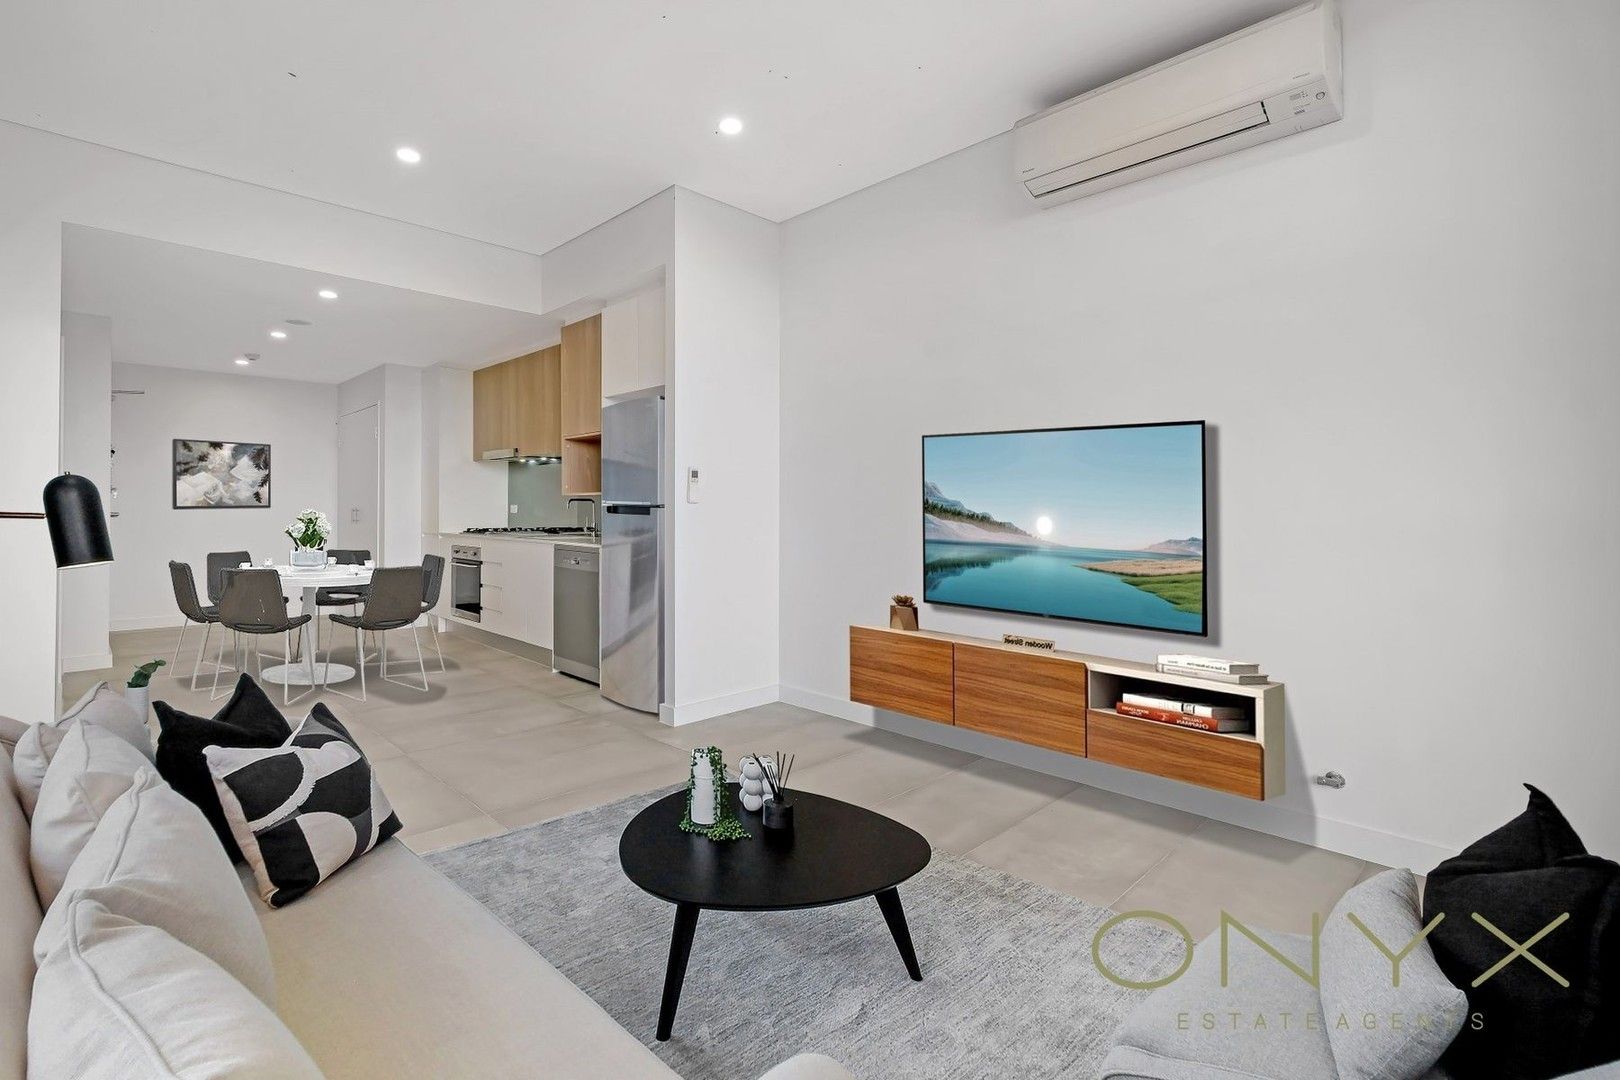 1 bedrooms Apartment / Unit / Flat in 504/621 Princes Highway Blakehurst BLAKEHURST NSW, 2221